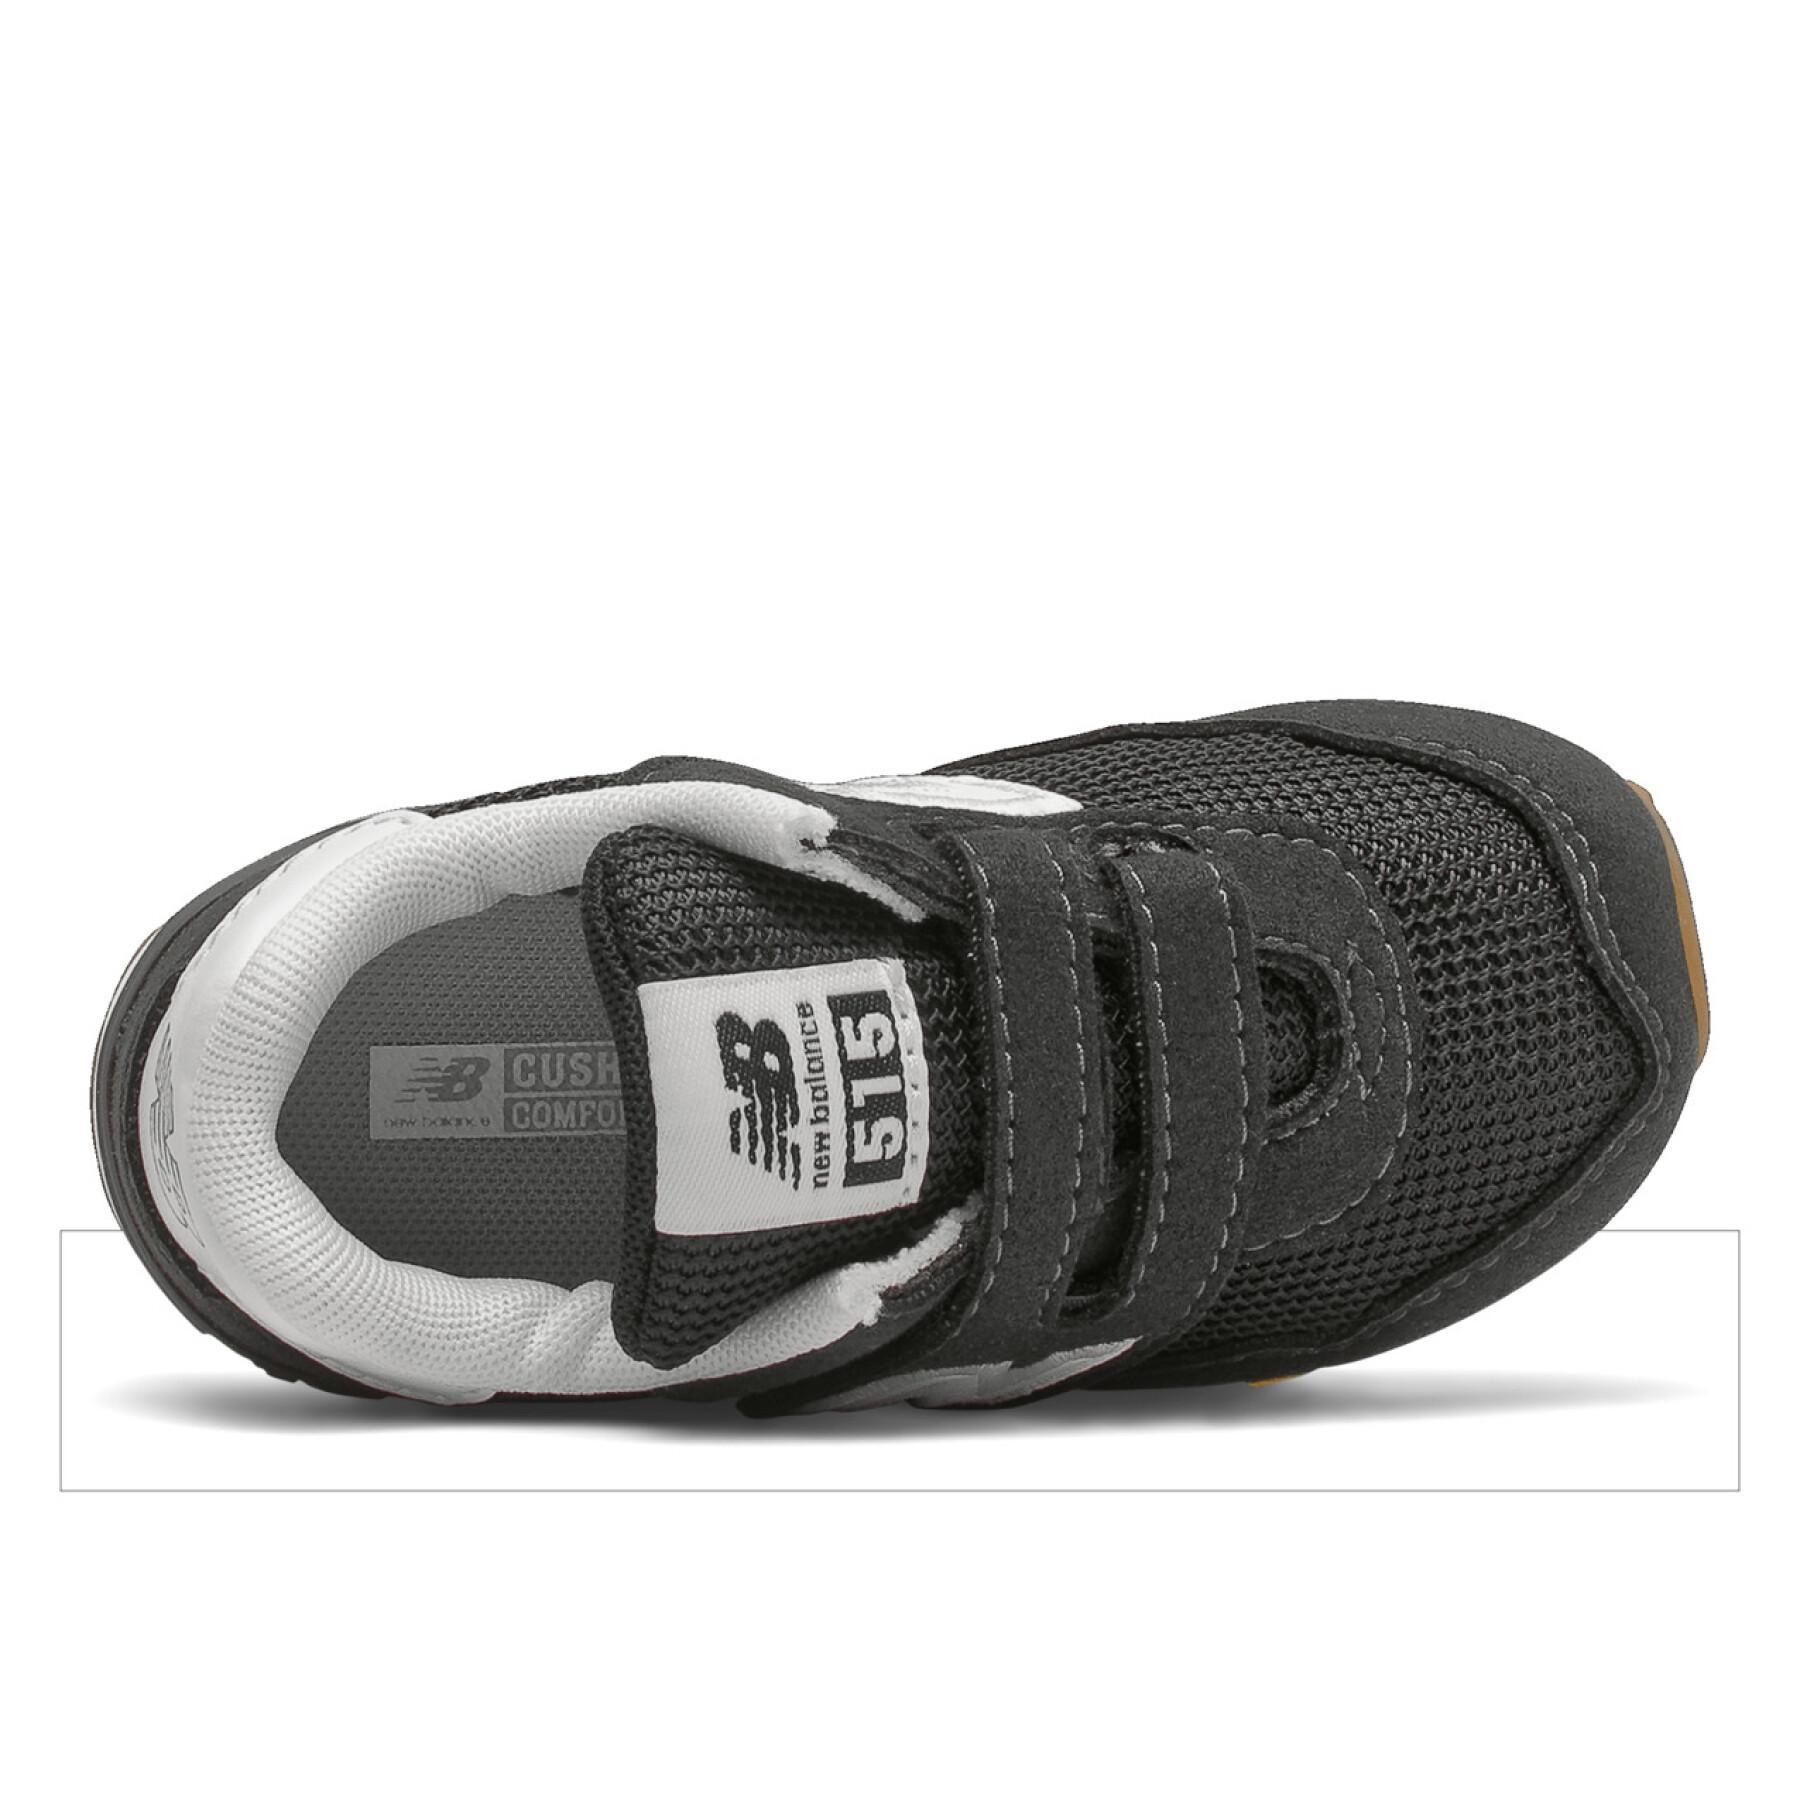 Chaussures bébé New Balance 515 classic